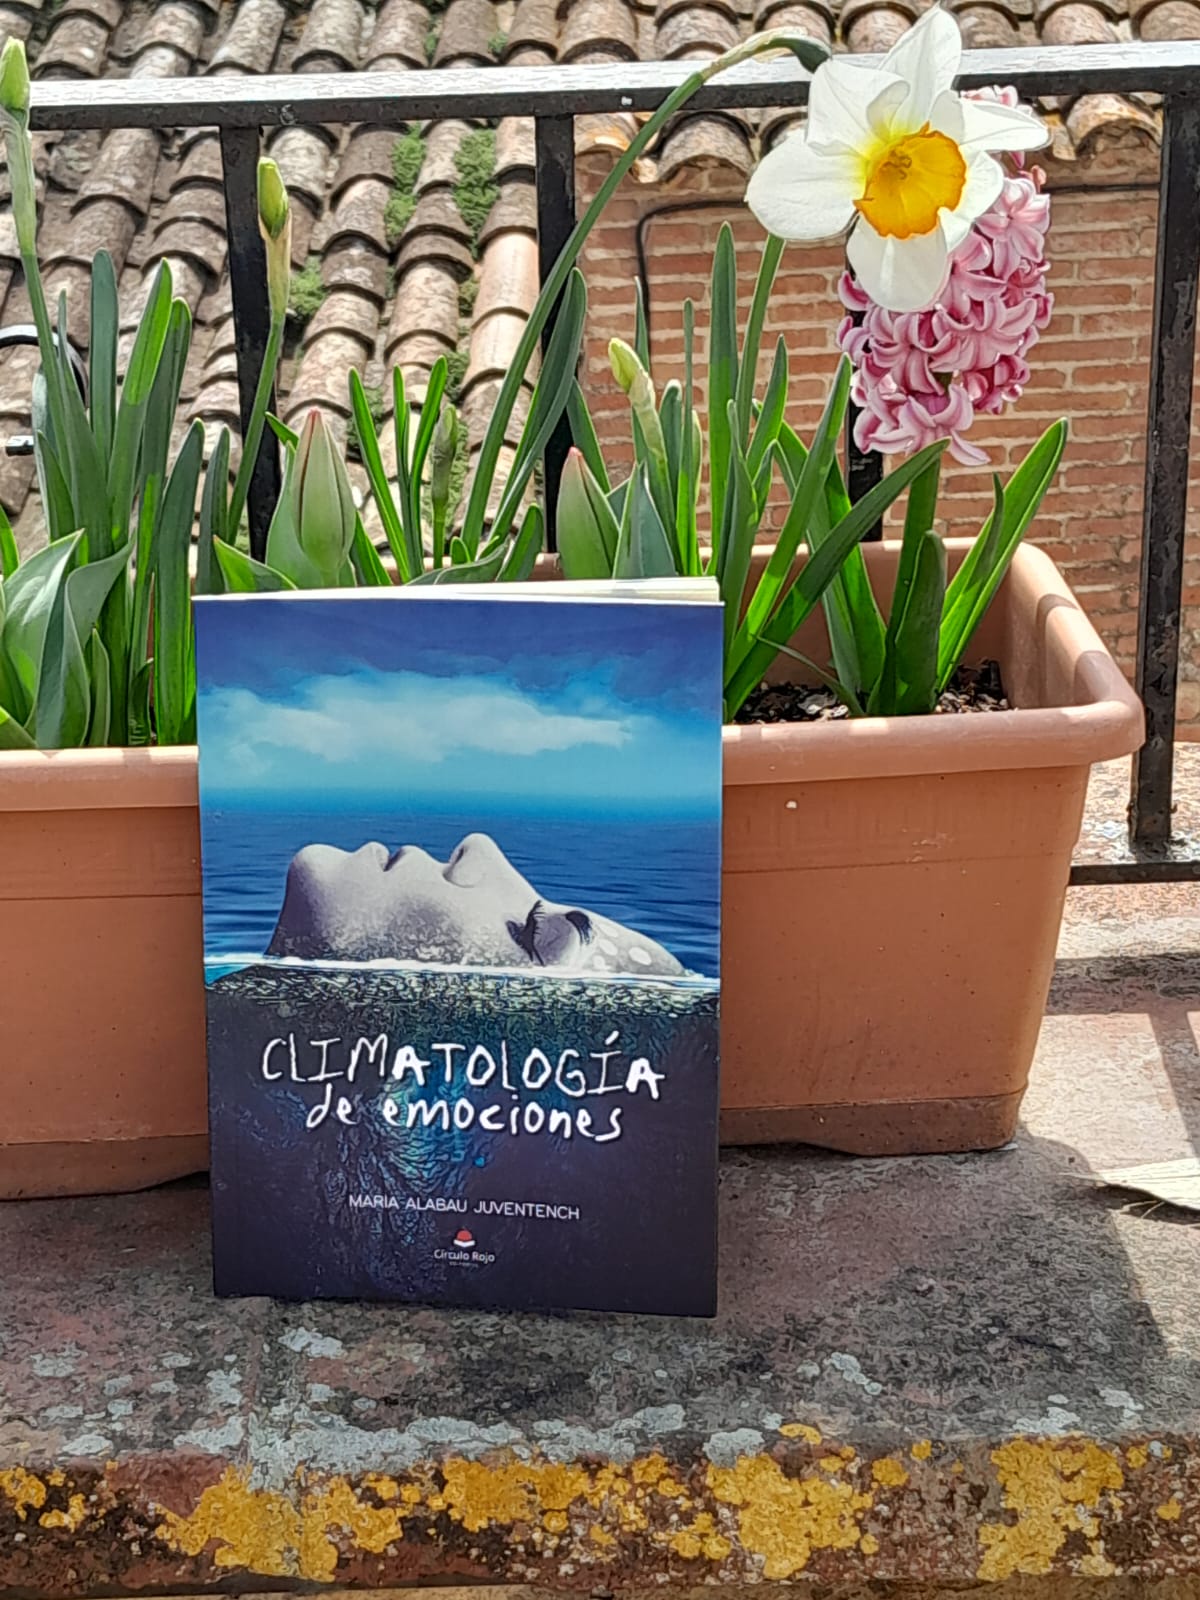 Una charla con la autora María Alabau Juventench, que nos cuenta todo sobre “Climatología de emociones”.